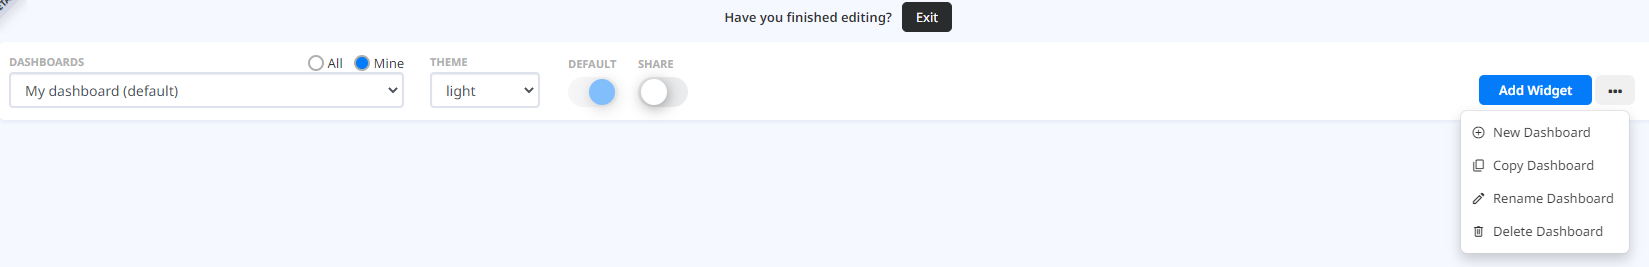 Configure header in edit mode